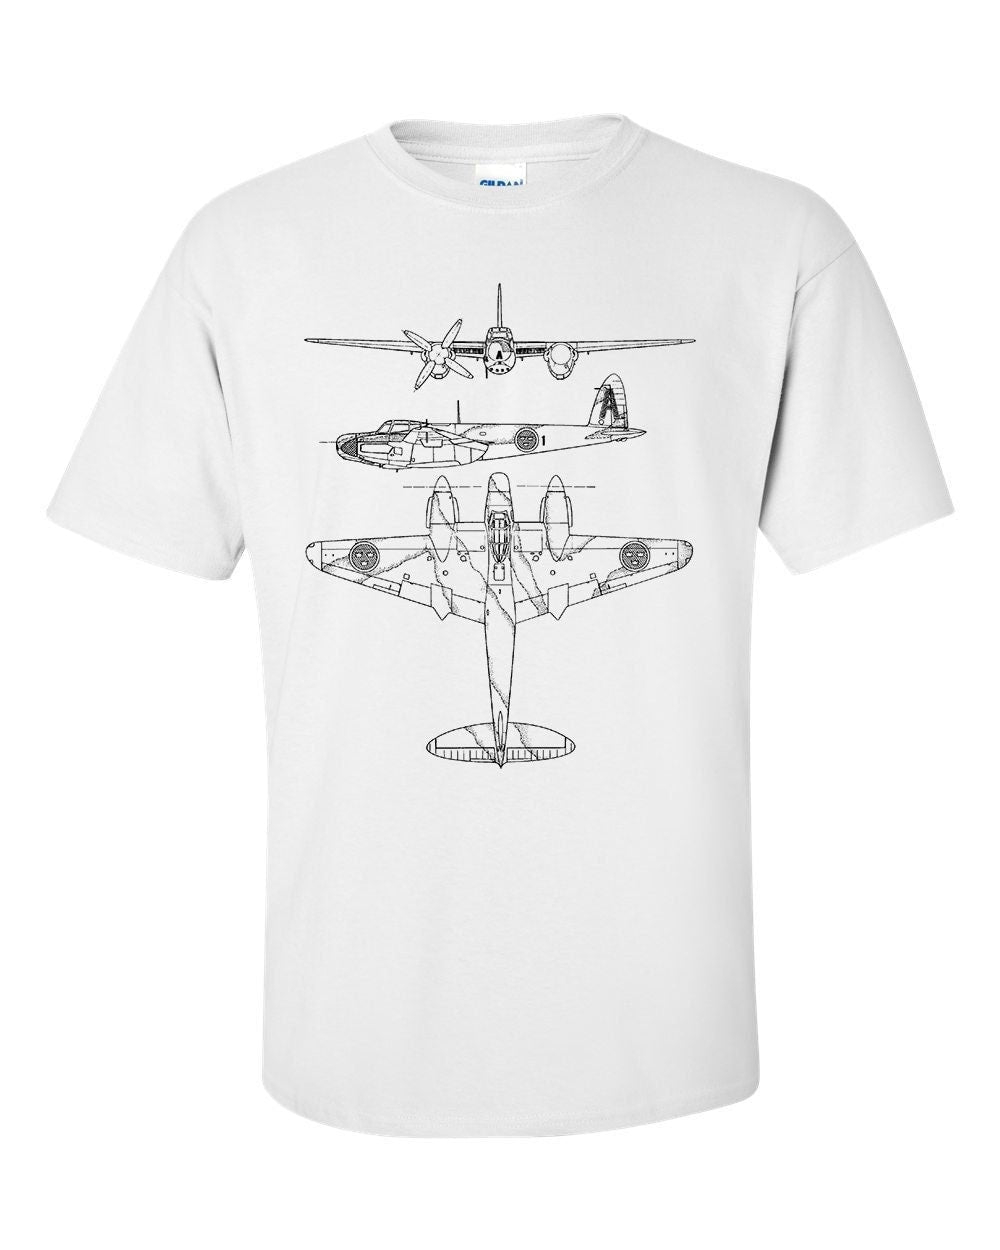 de Havilland Mosquito Technical Drawing Blueprint WW2 Aircraft T-Shirt